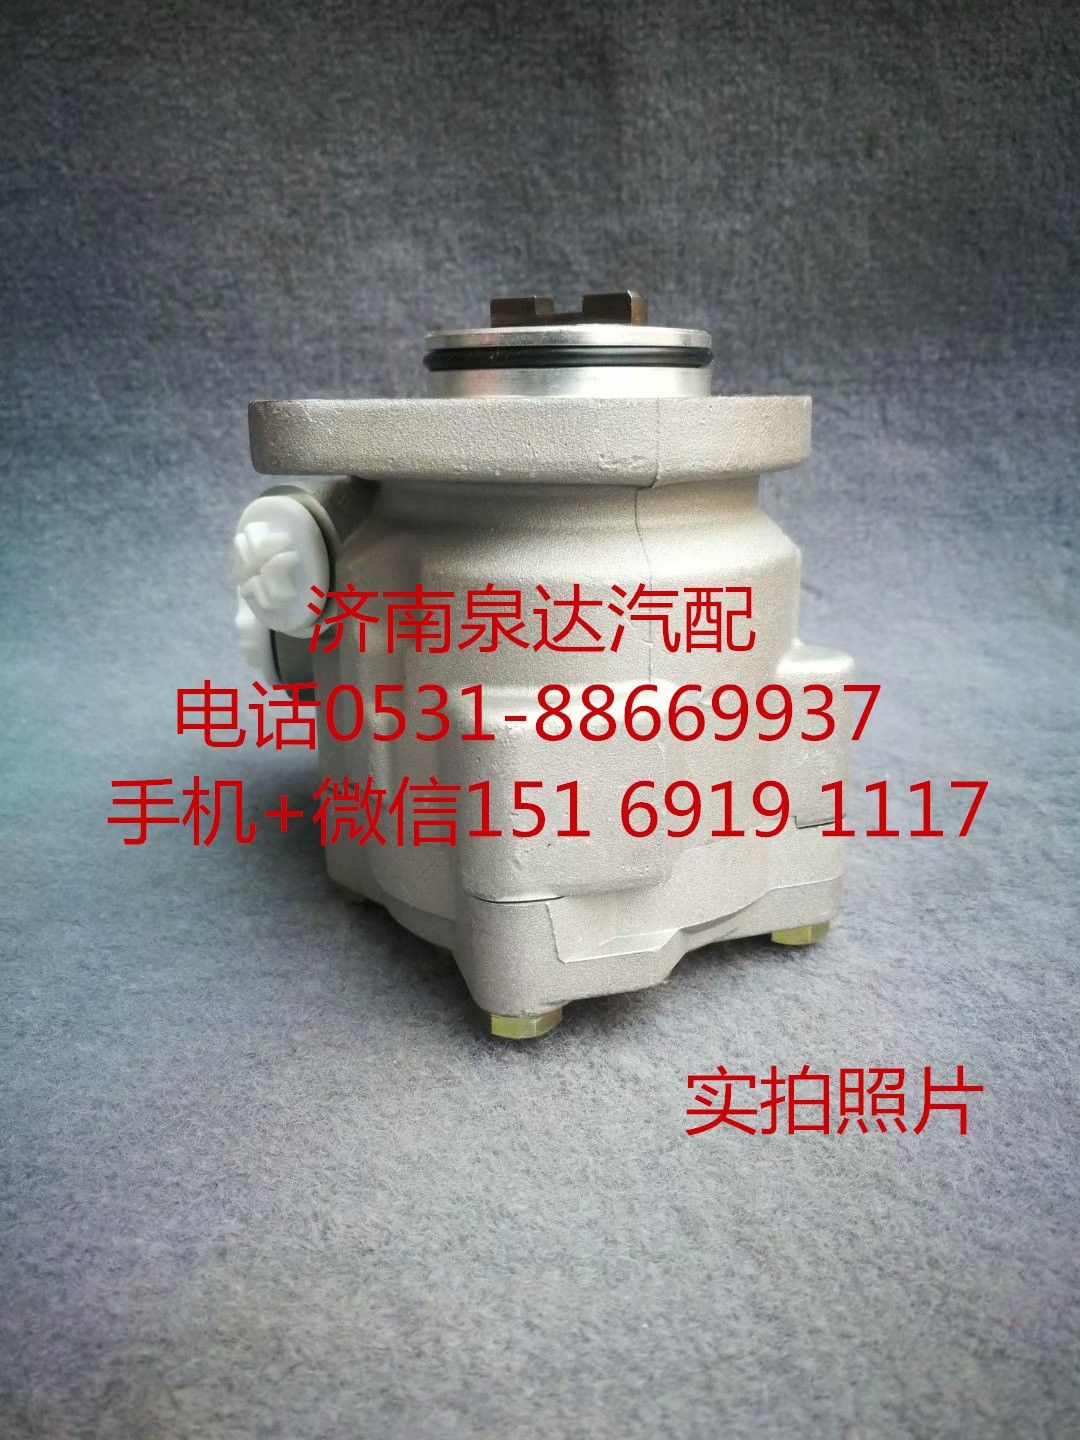 LG9704472250,转向助力泵,济南泉达汽配有限公司